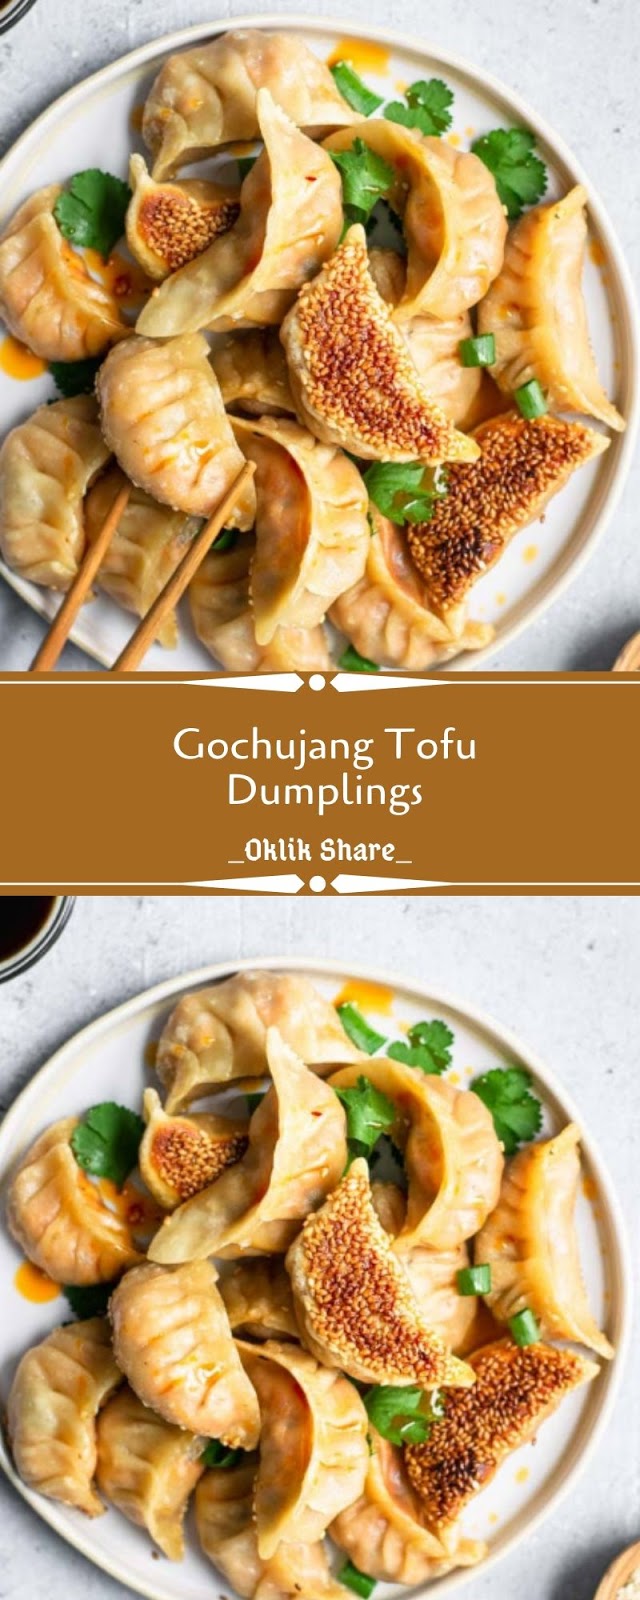 Gochujang Tofu Dumplings